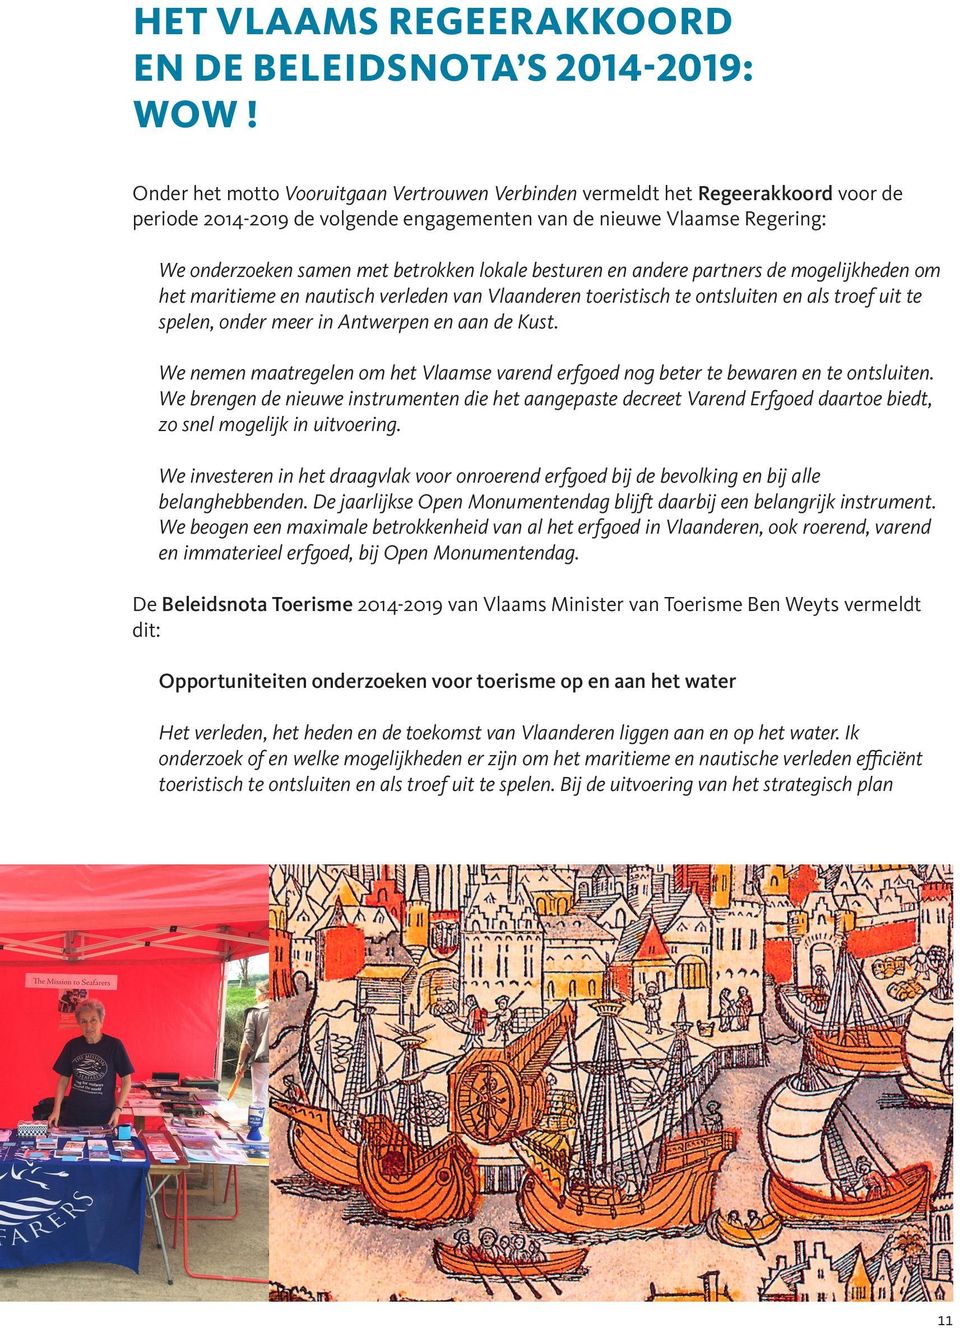 lokale besturen en andere partners de mogelijkheden om het maritieme en nautisch verleden van Vlaanderen toeristisch te ontsluiten en als troef uit te spelen, onder meer in Antwerpen en aan de Kust.